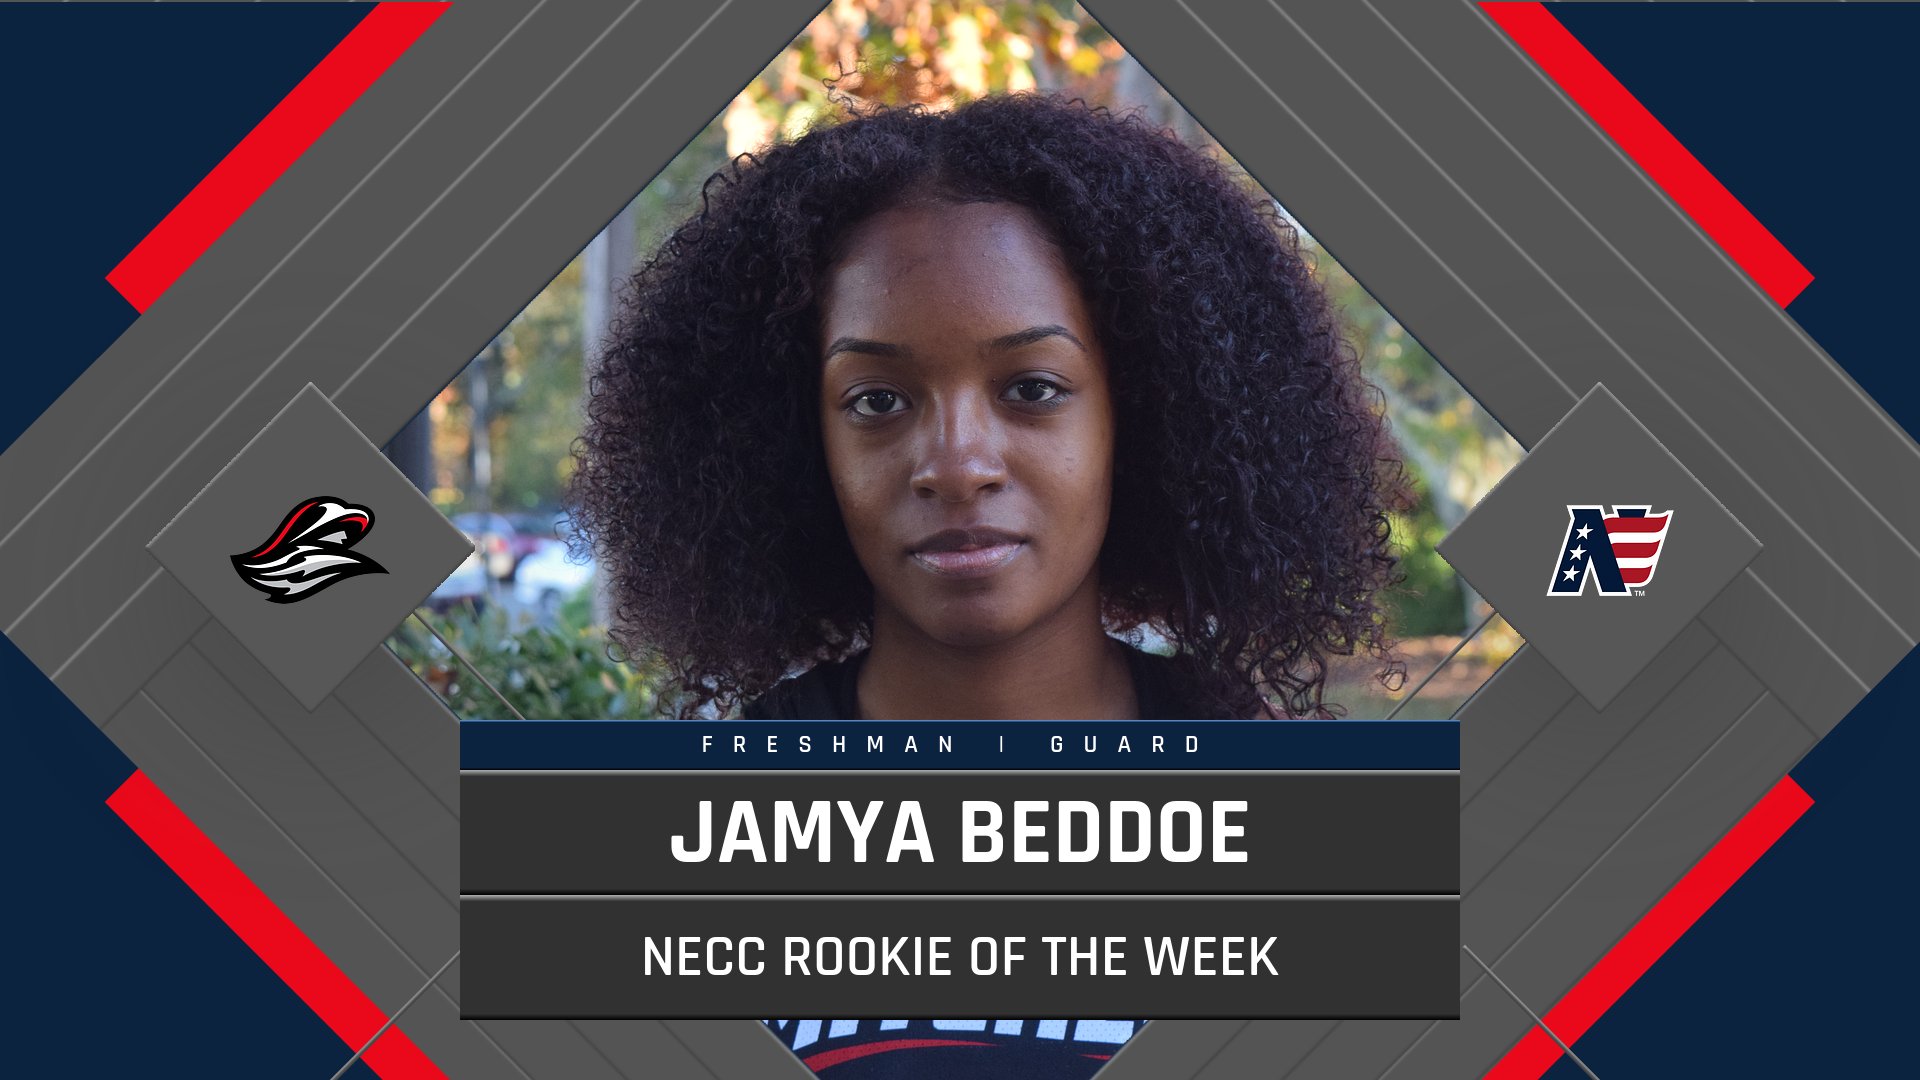 Beddoe Named NECC Rookie of the Week